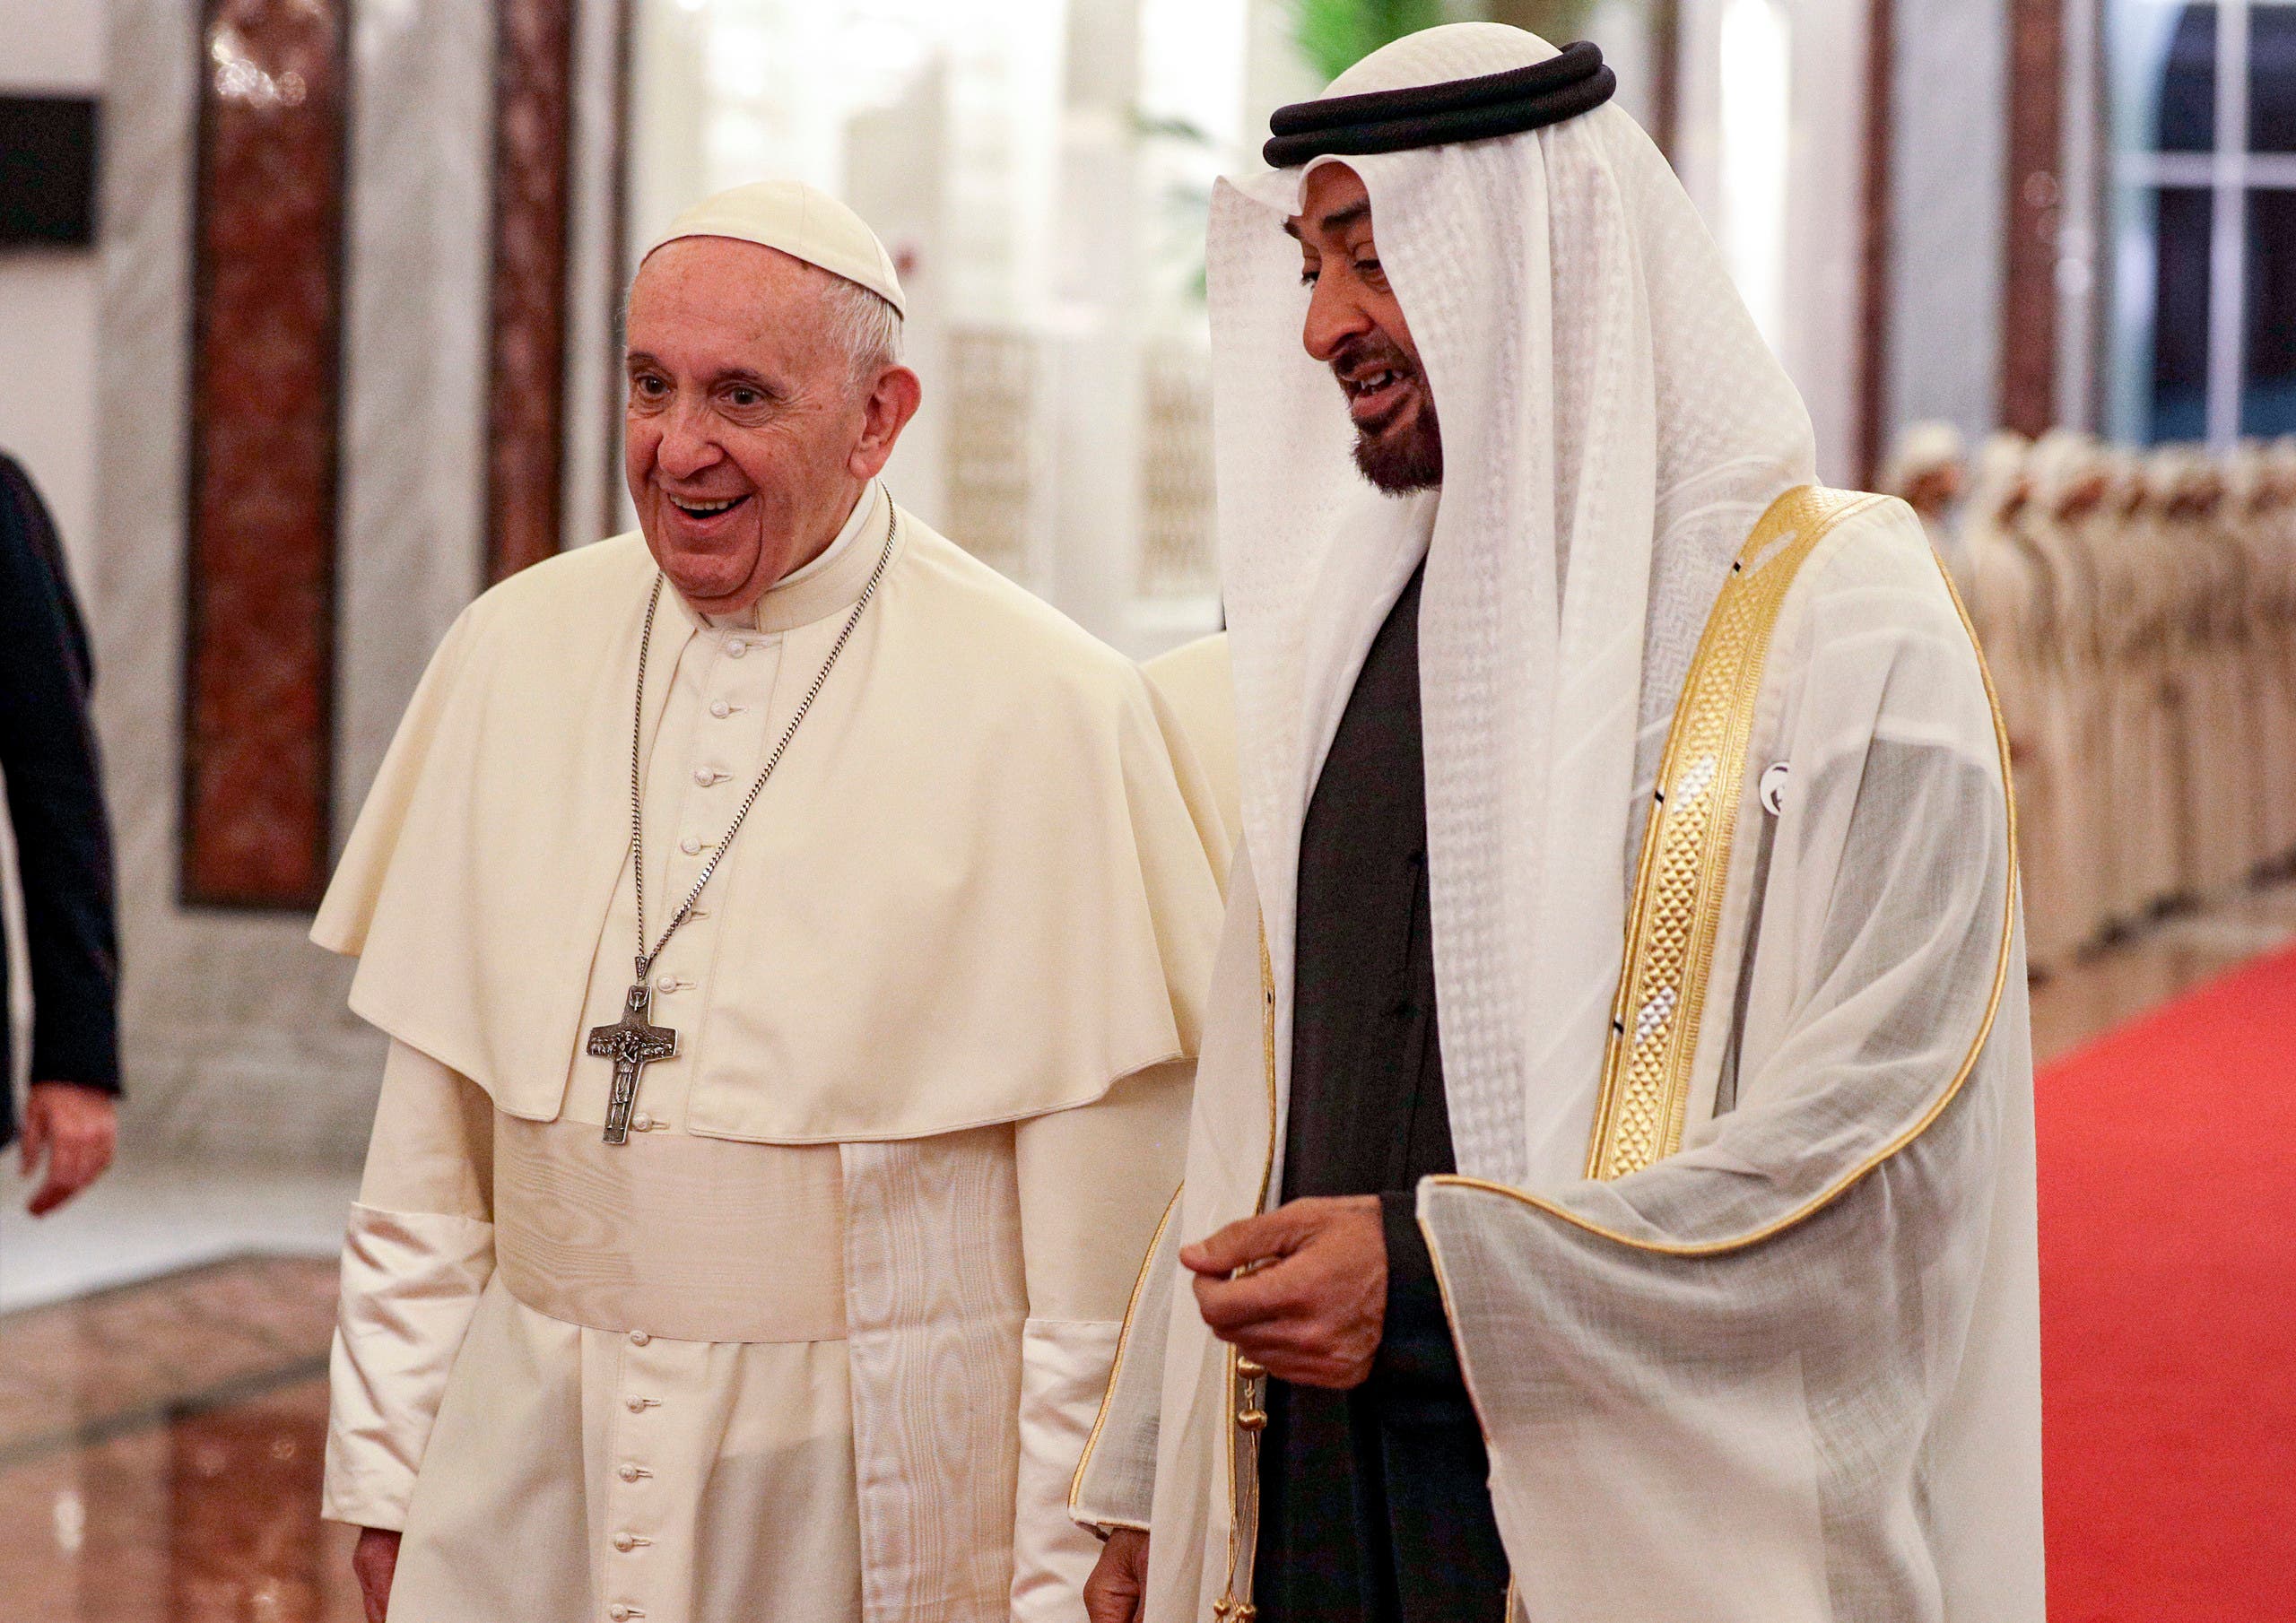 وصل البابا فرنسيس، بابا الفاتيكان، إلى الإمارات، ليل الأحد، في زيارة تاريخية للمنطقة 28c83f43-43bf-4e42-a09b-80090ffc443b